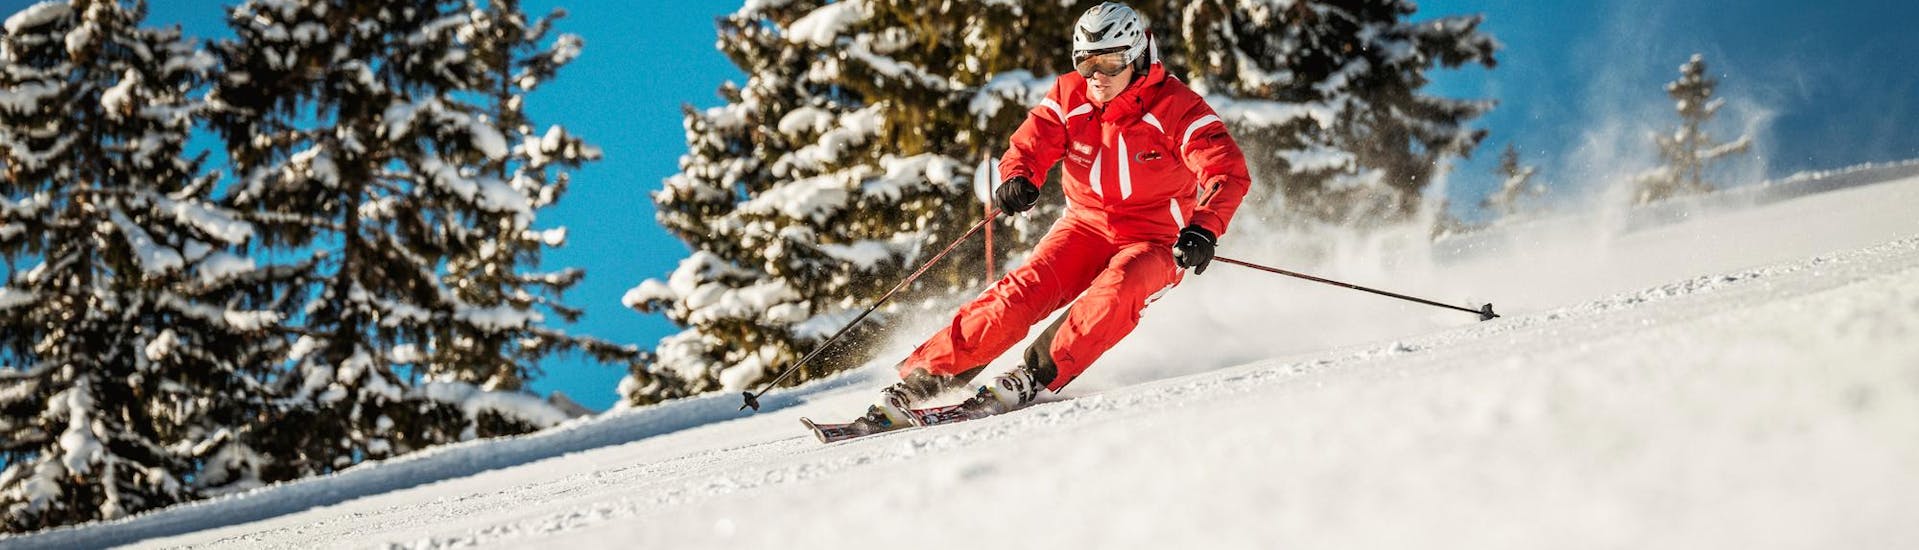 Clases de esquí para adultos para avanzados con Skischule Busslehner Achenkirch.